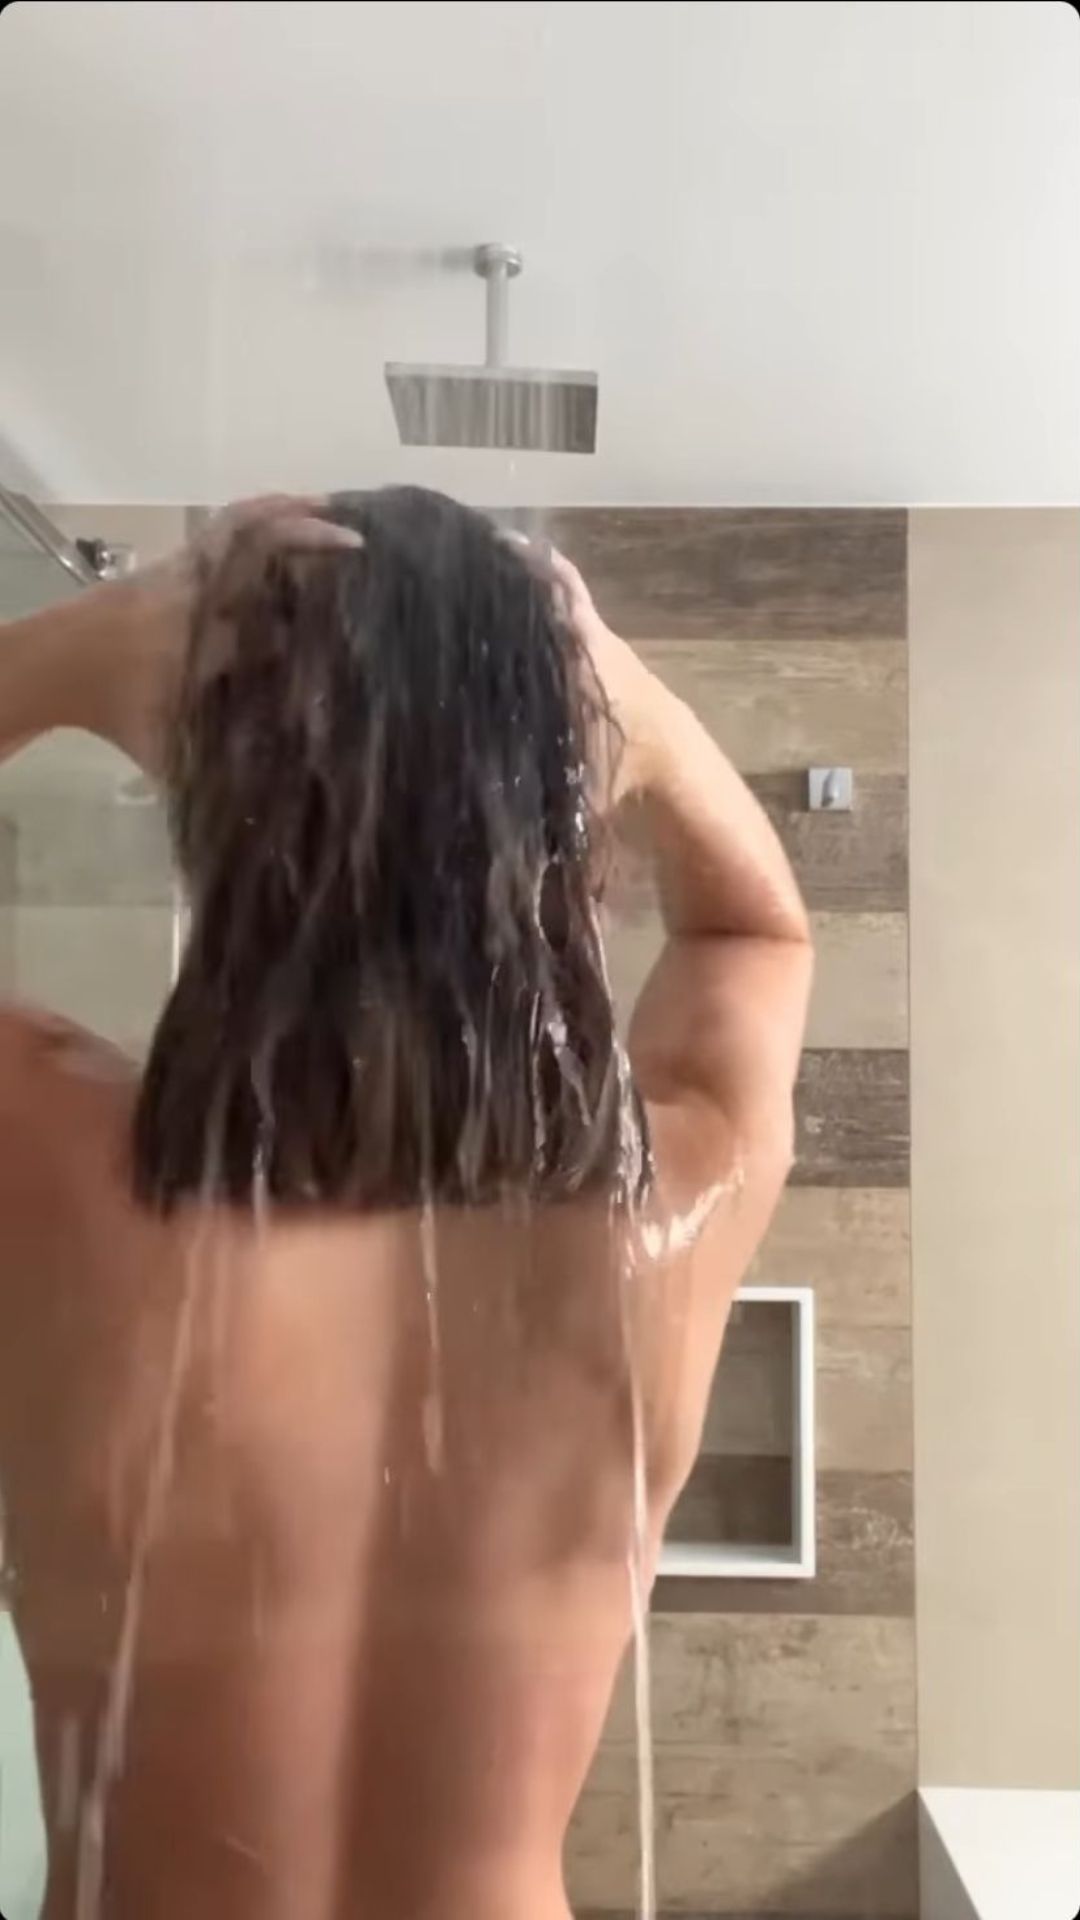 Jade Picon chama atenção com vídeo de banho